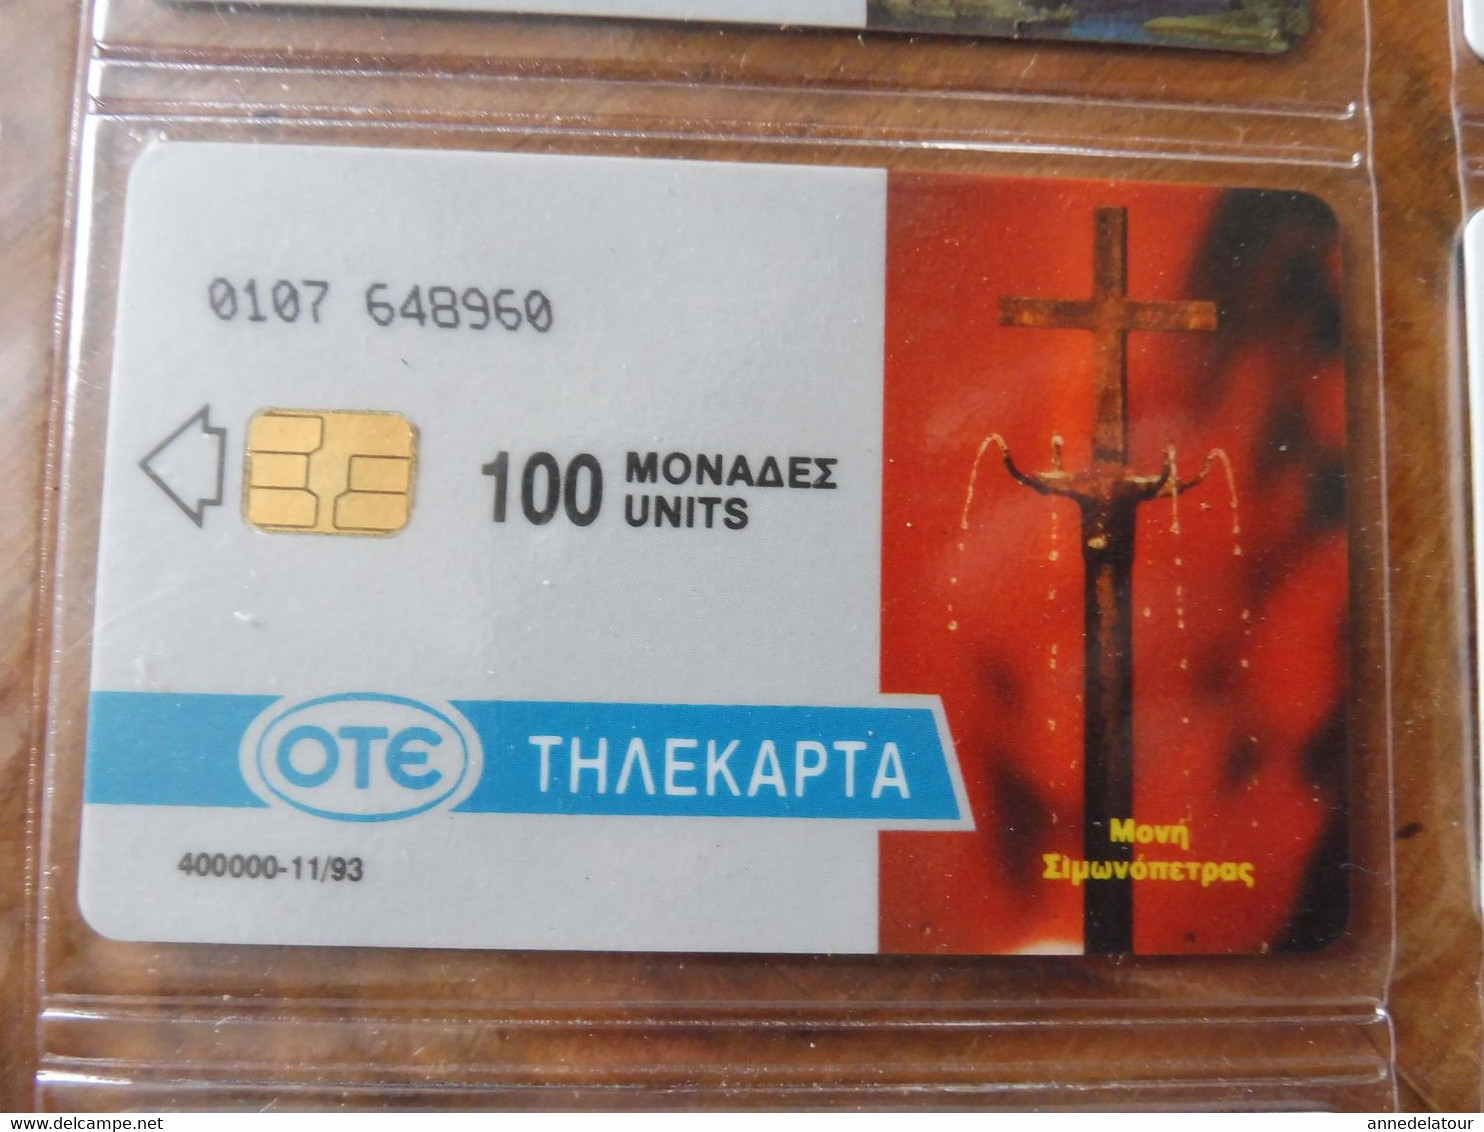 8 télécartes (cartes téléphoniques)  OTE  ΤΗΛΕΚΑΡΤΑ     Origine Grèce